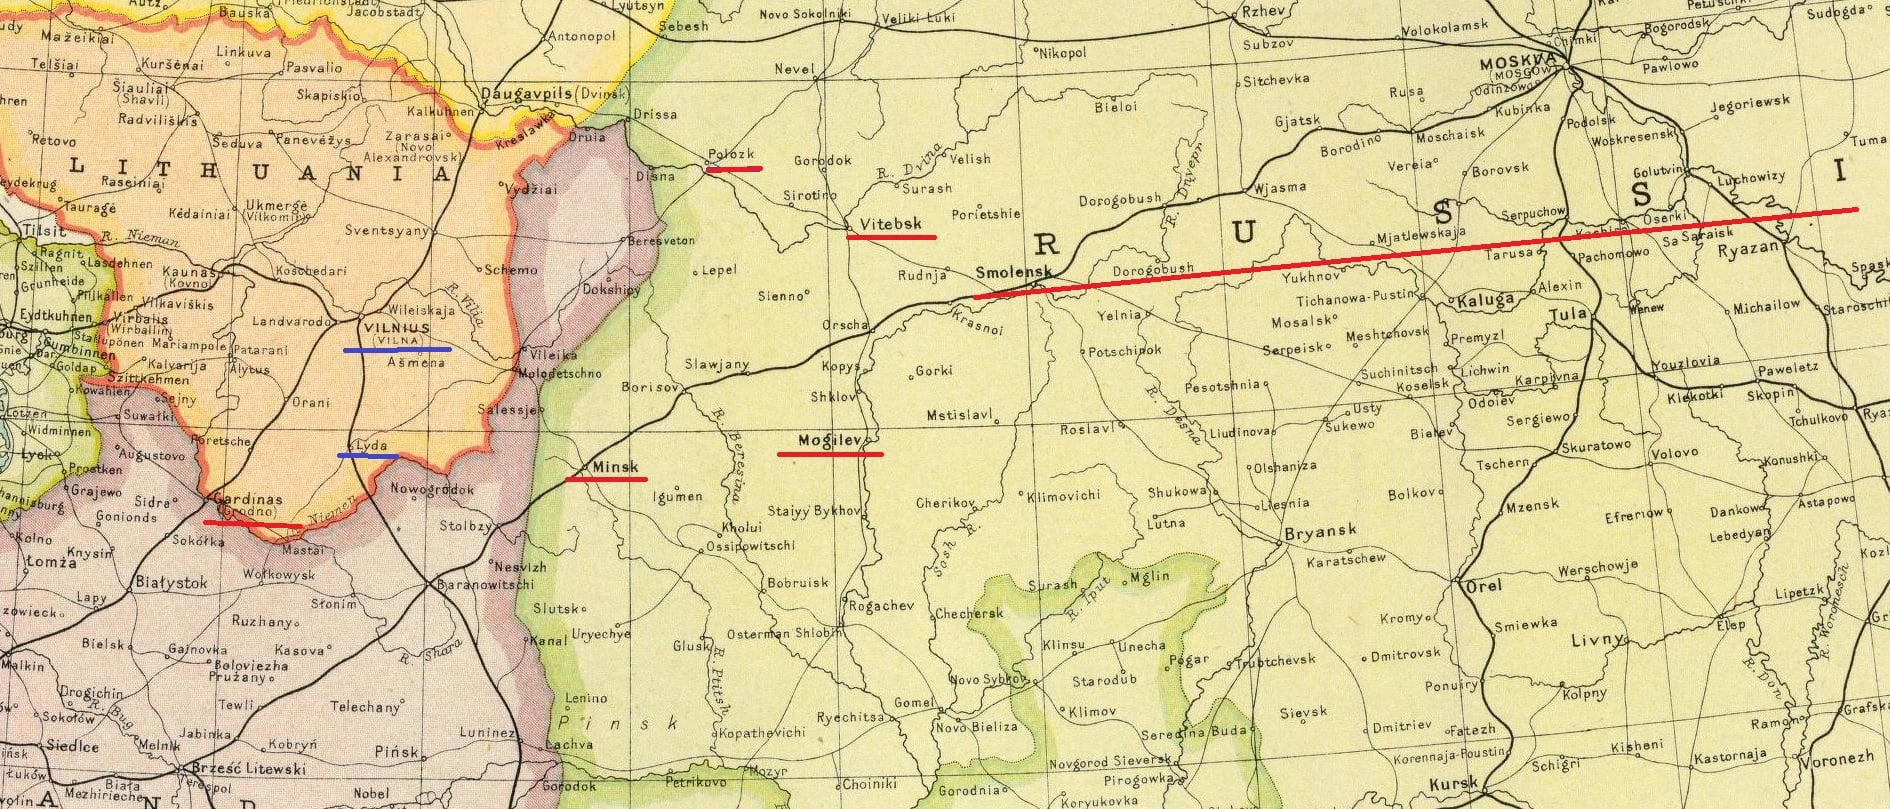 1922 m. angliško žemėlapio fragmentas su Lenkijai priskirta siaura juosta šalia Lietuvos ir Rusijos.jpg